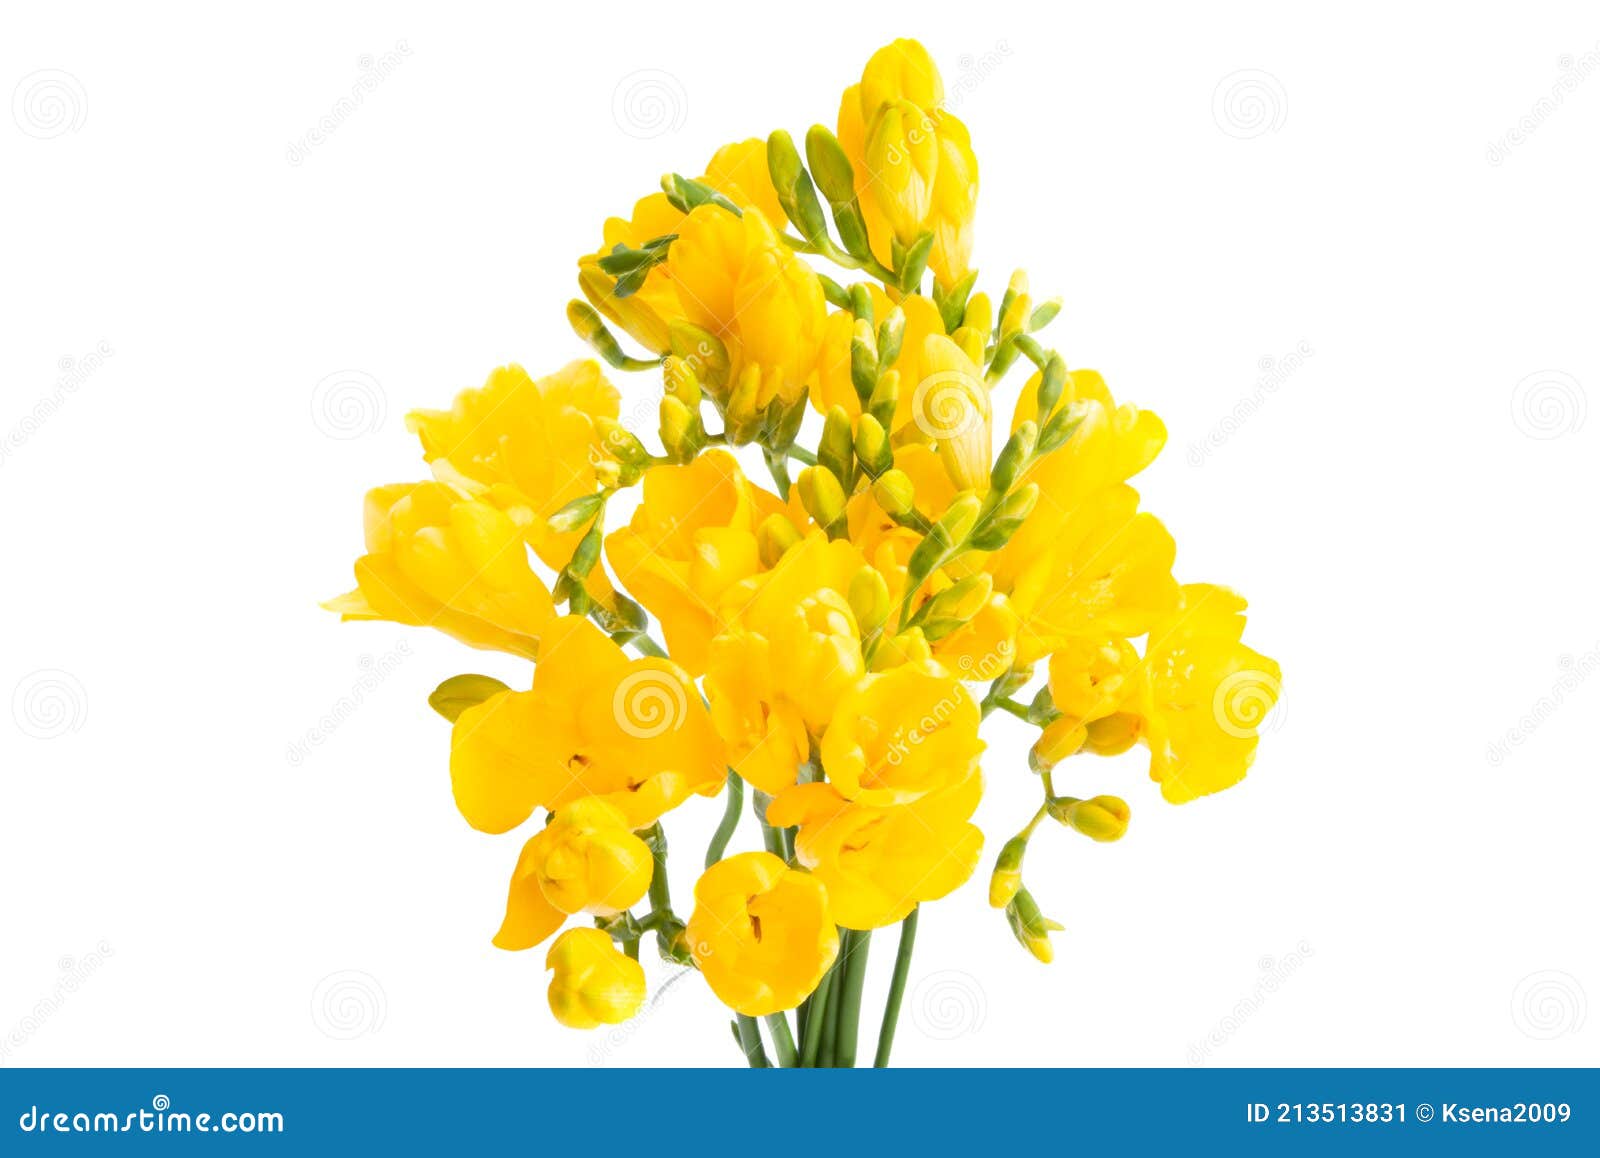 Fleurs Jaune Freesia Isolées Image stock - Image du nature, célébrez:  213513831